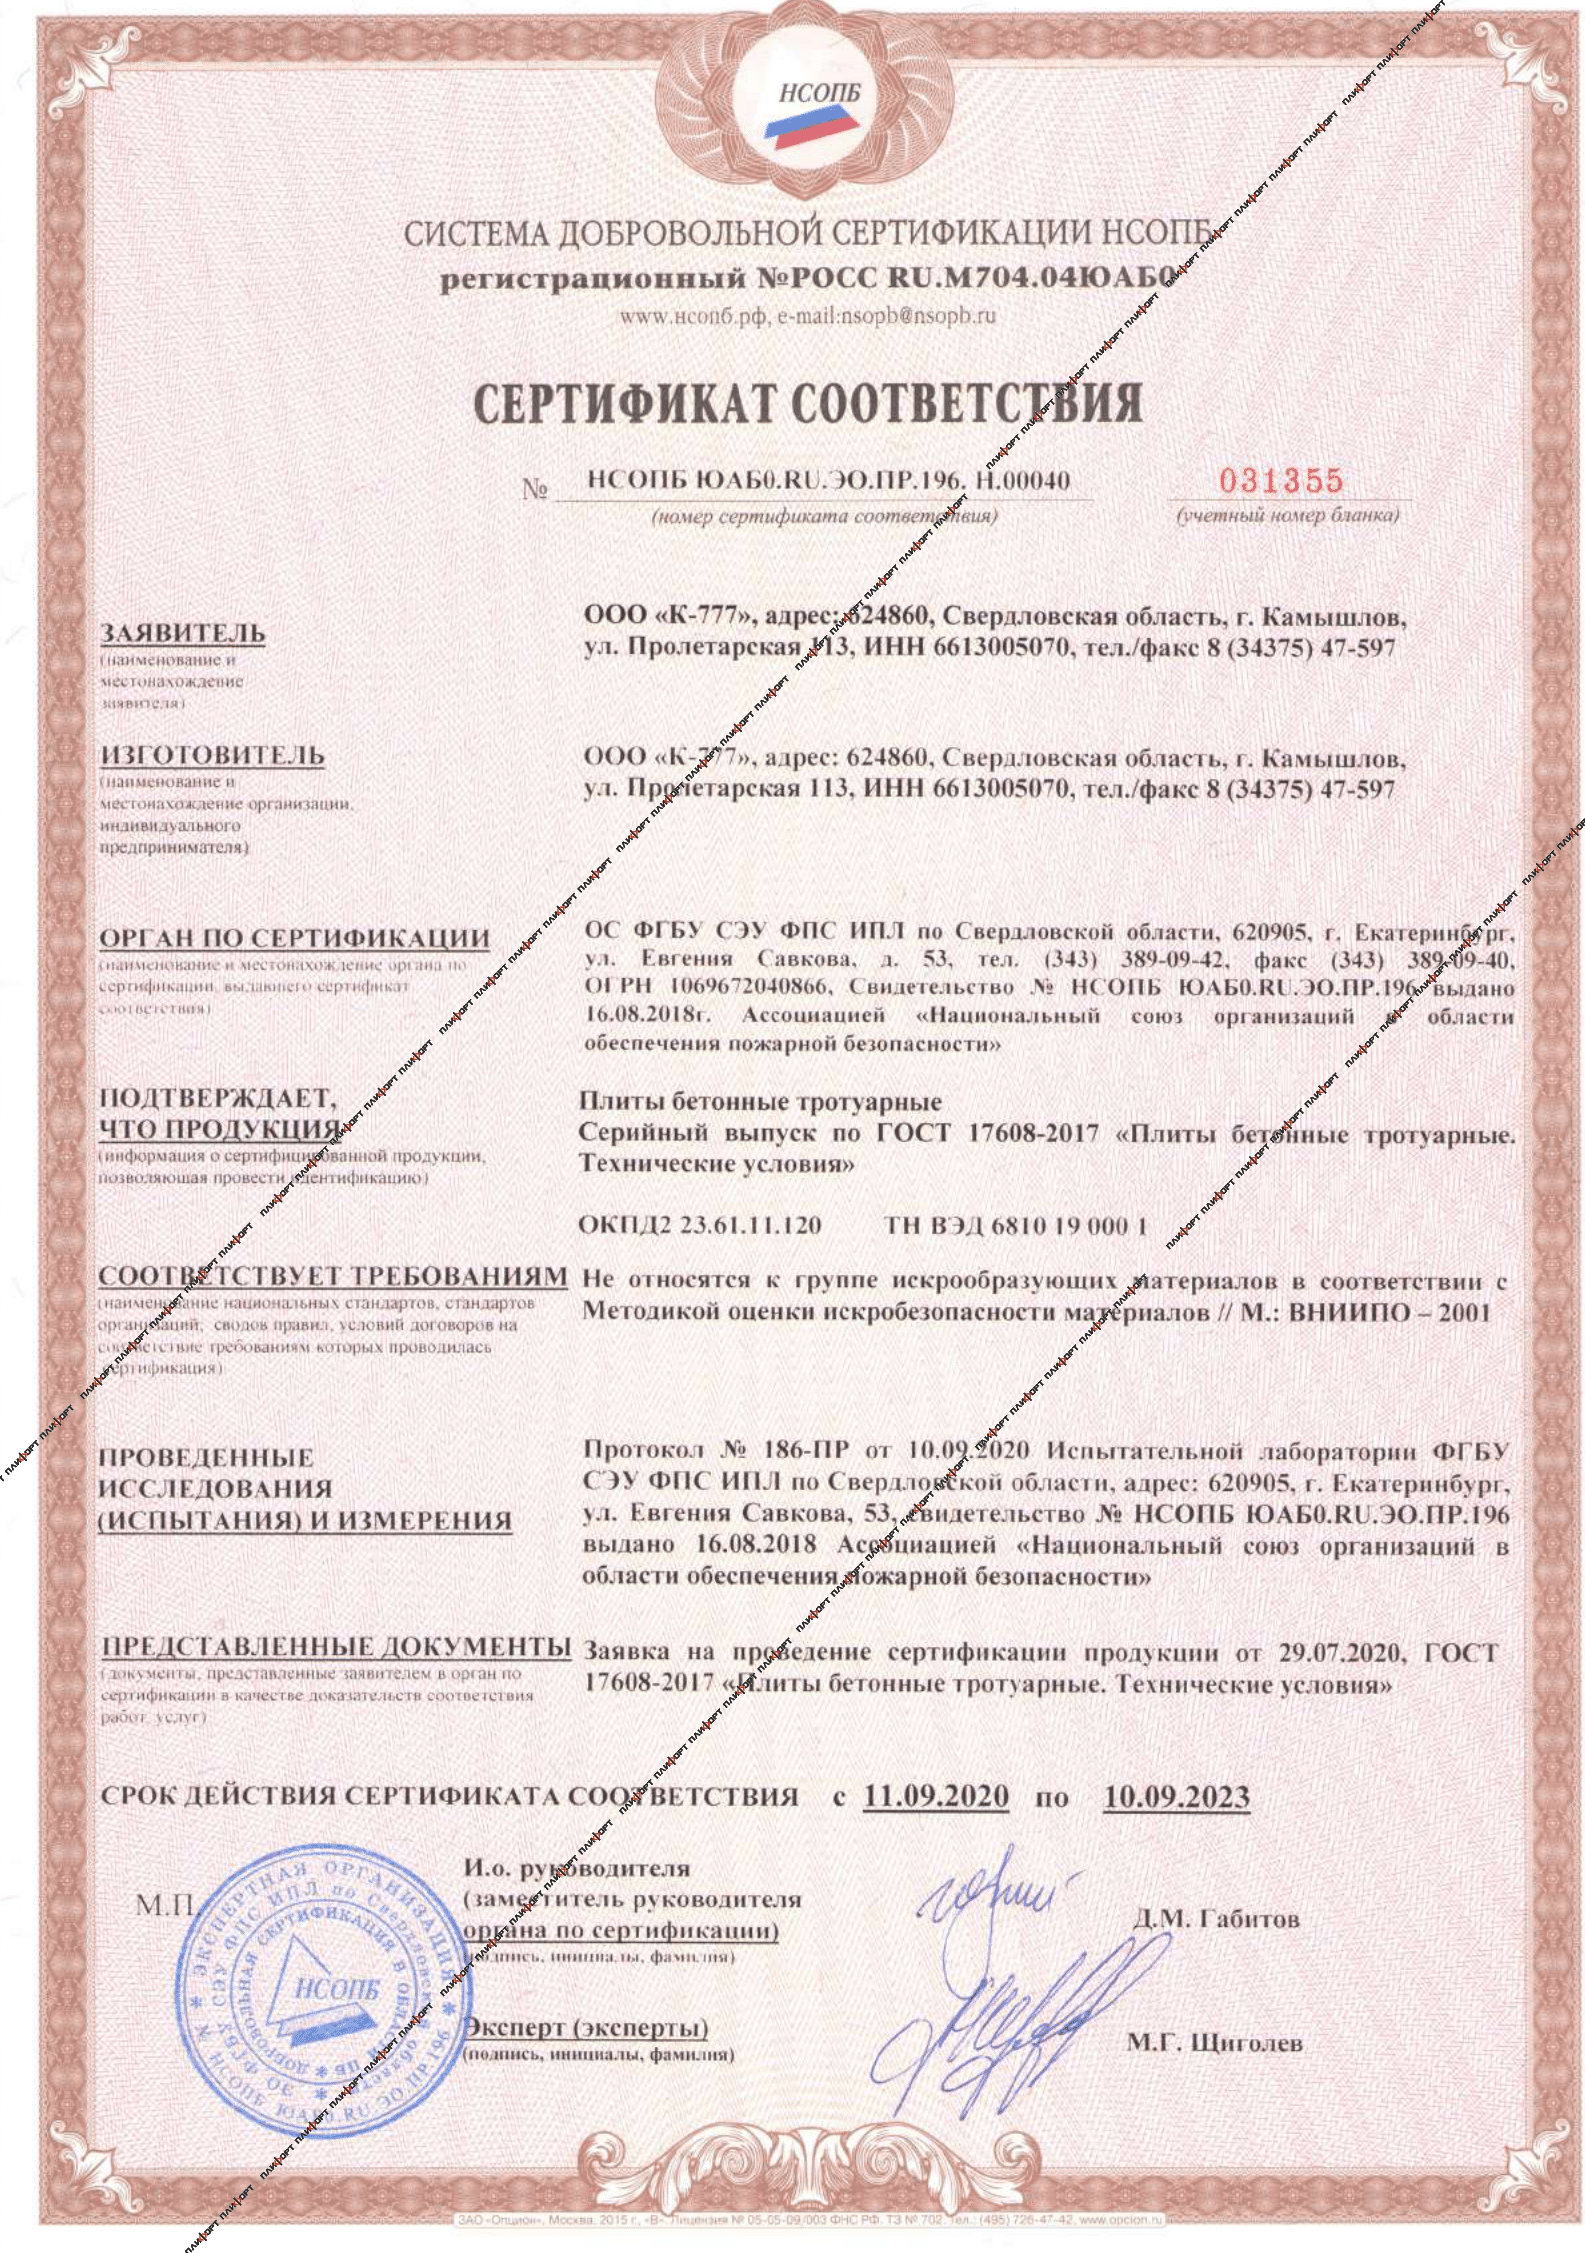 сертификат искробезопасные плиты бетонные тротуарные ГОСТ 17608-2017